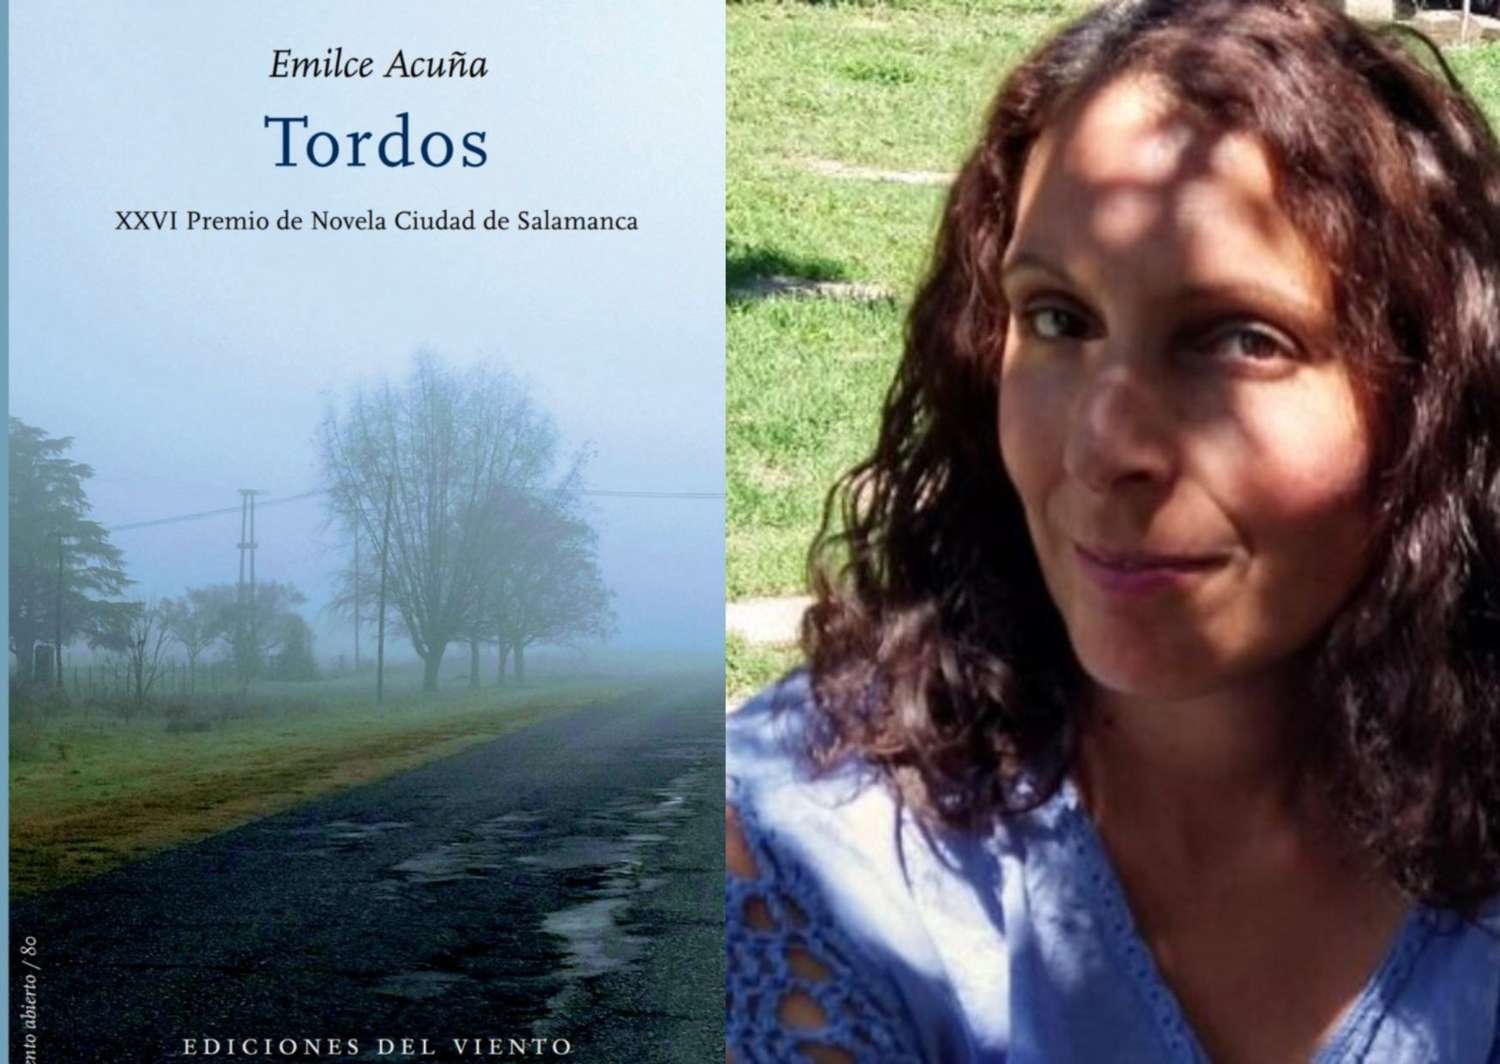 Emilce Acuña presenta su libro “Tordos” en el centro cultural